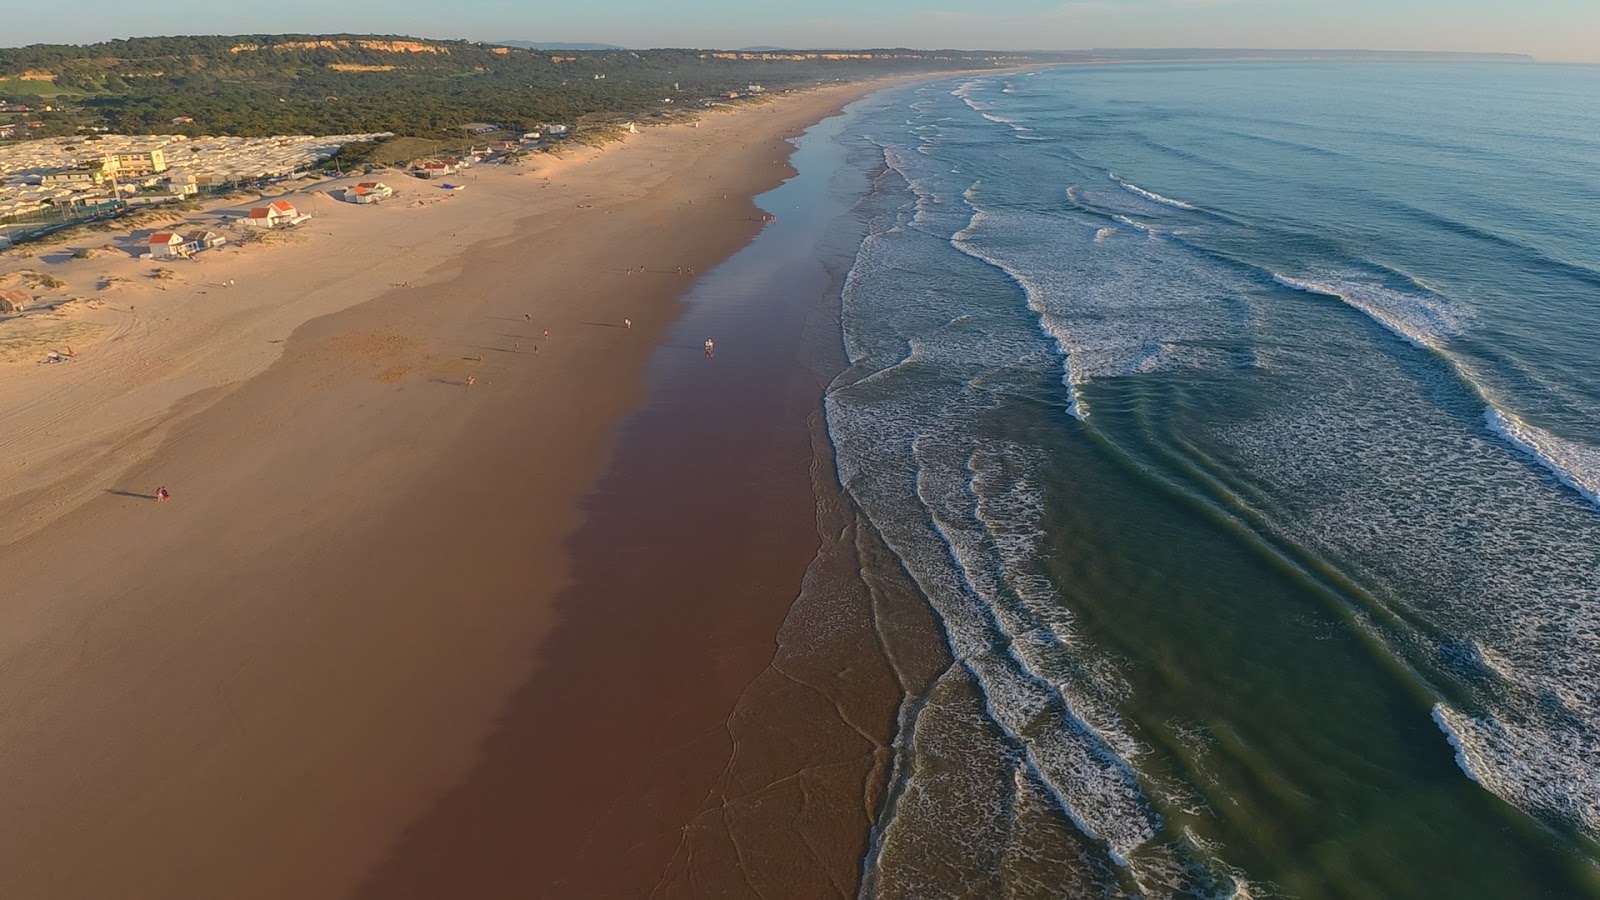 Fotografie cu Praia da saude - locul popular printre cunoscătorii de relaxare